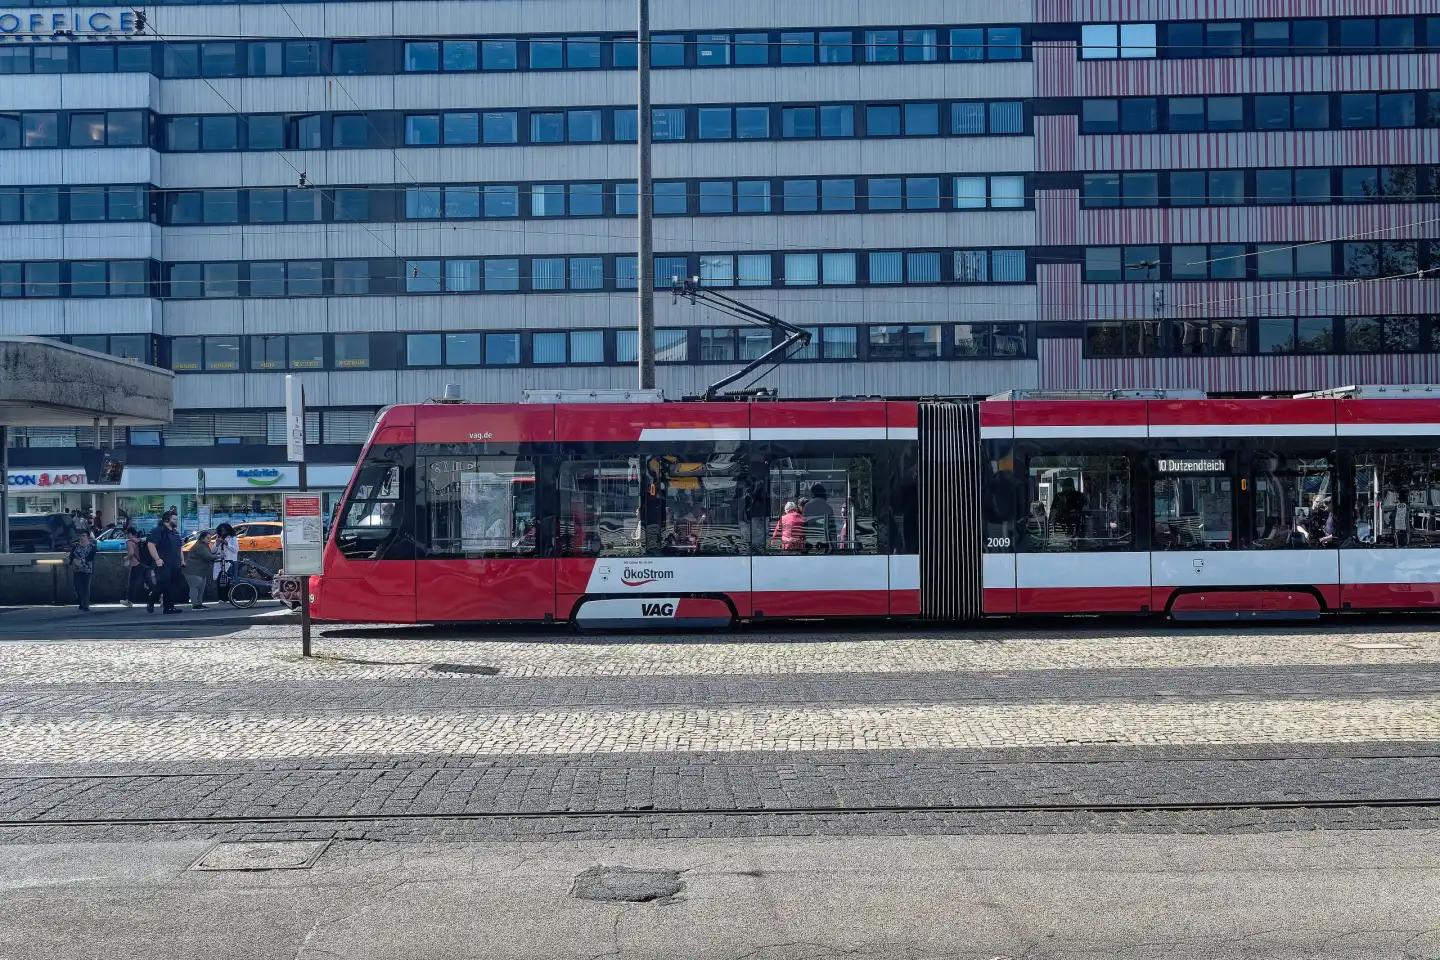 Nuremberg public transport streetcar at the Plärrer stop